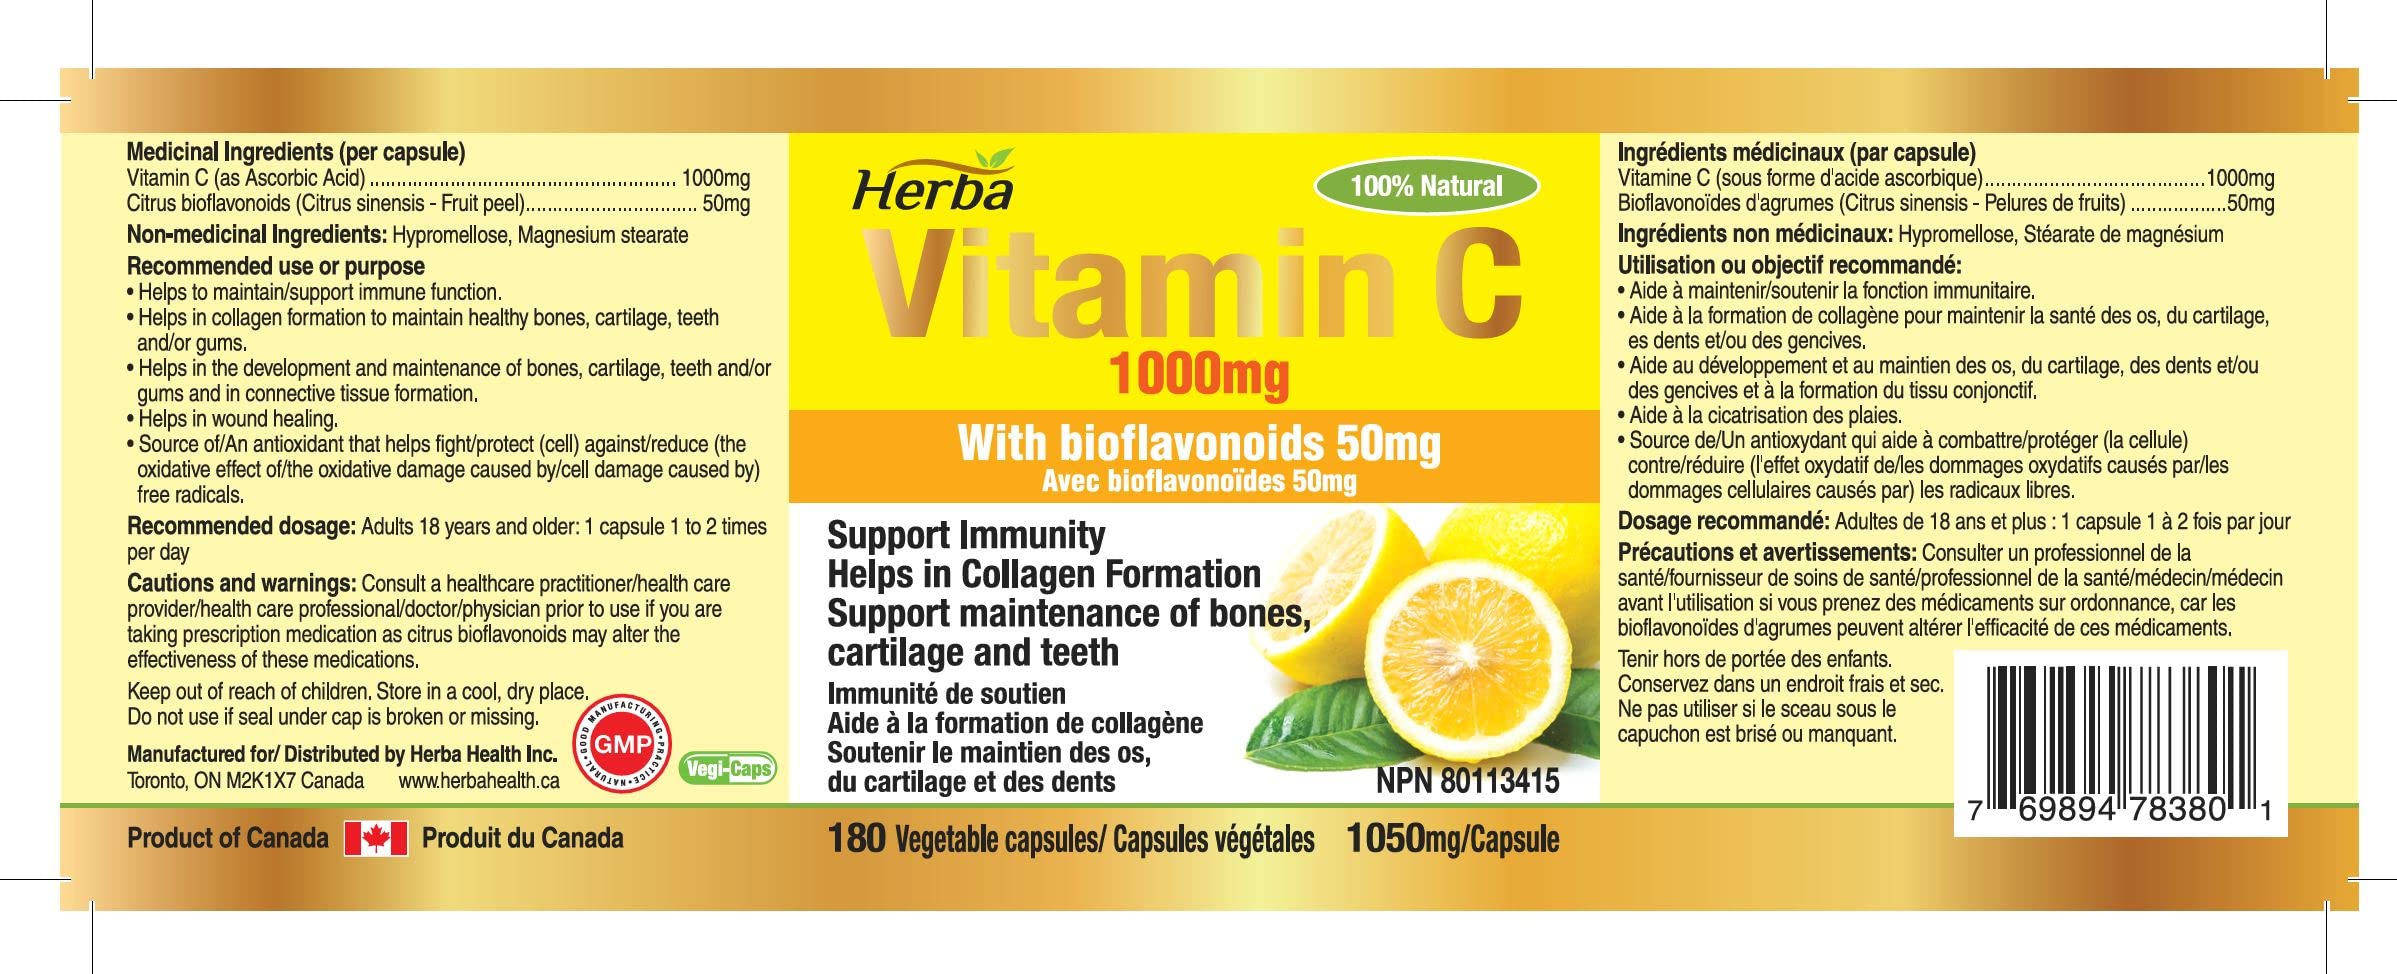 buy vitamin c made in Canada